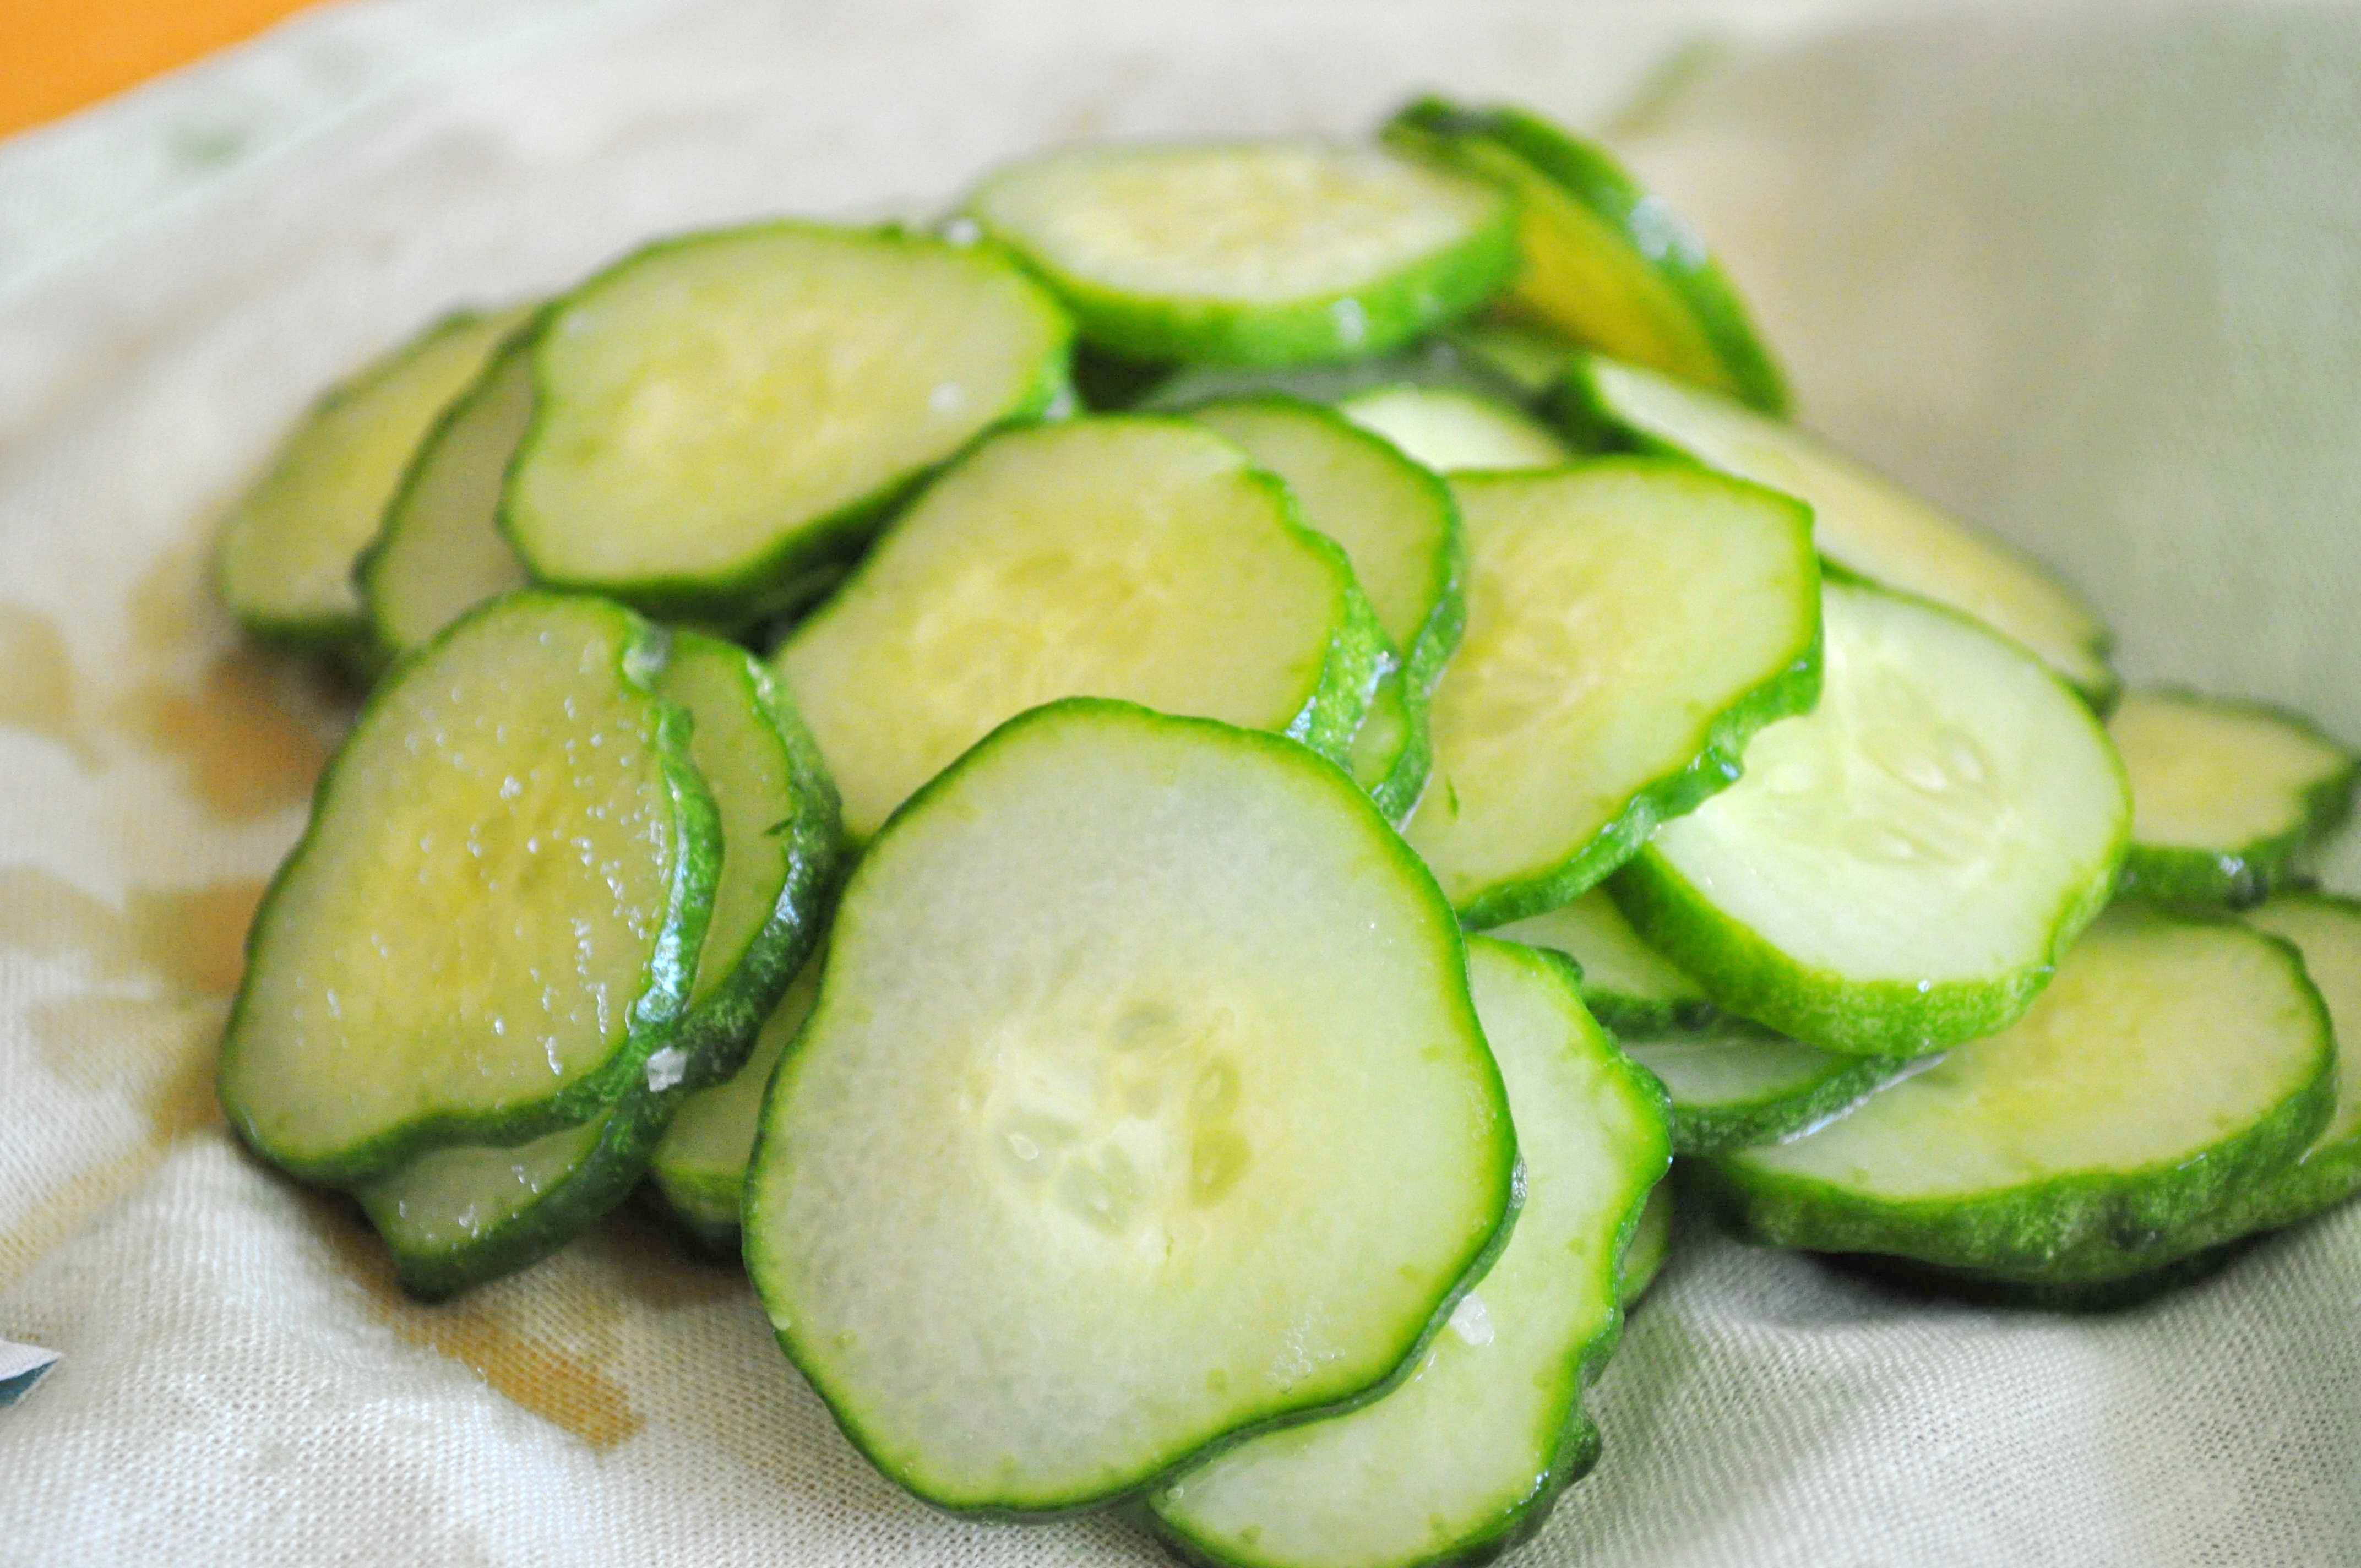 cucumbers (before)